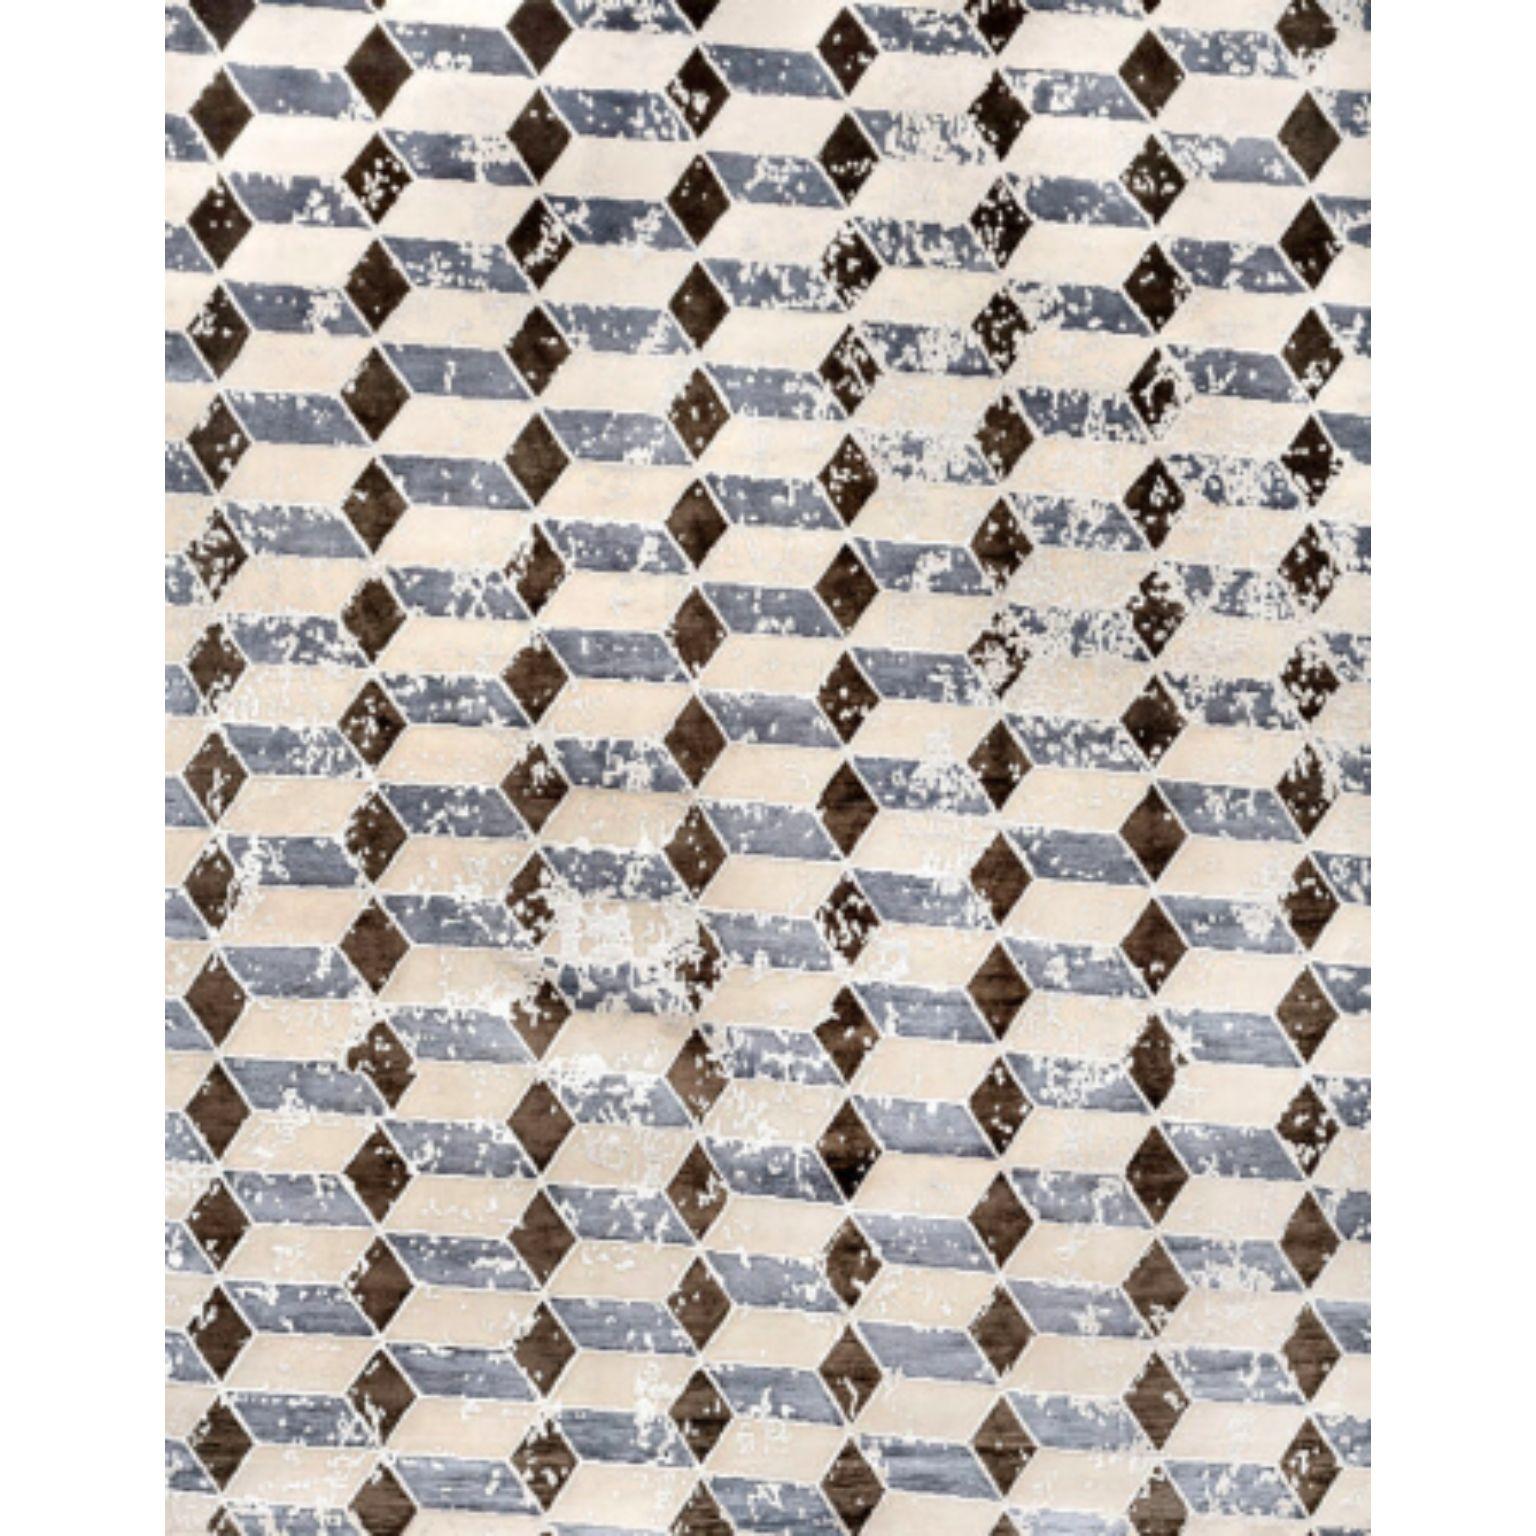 BRERA-Teppich von Illulian
Abmessungen: T300 x H200 cm 
MATERIALIEN: Wolle 50%, Seide 50%
Je nach MATERIAL und Größe sind verschiedene Varianten möglich und die Preise können variieren.

Illulian, eine historische und prestigeträchtige Teppichmarke,